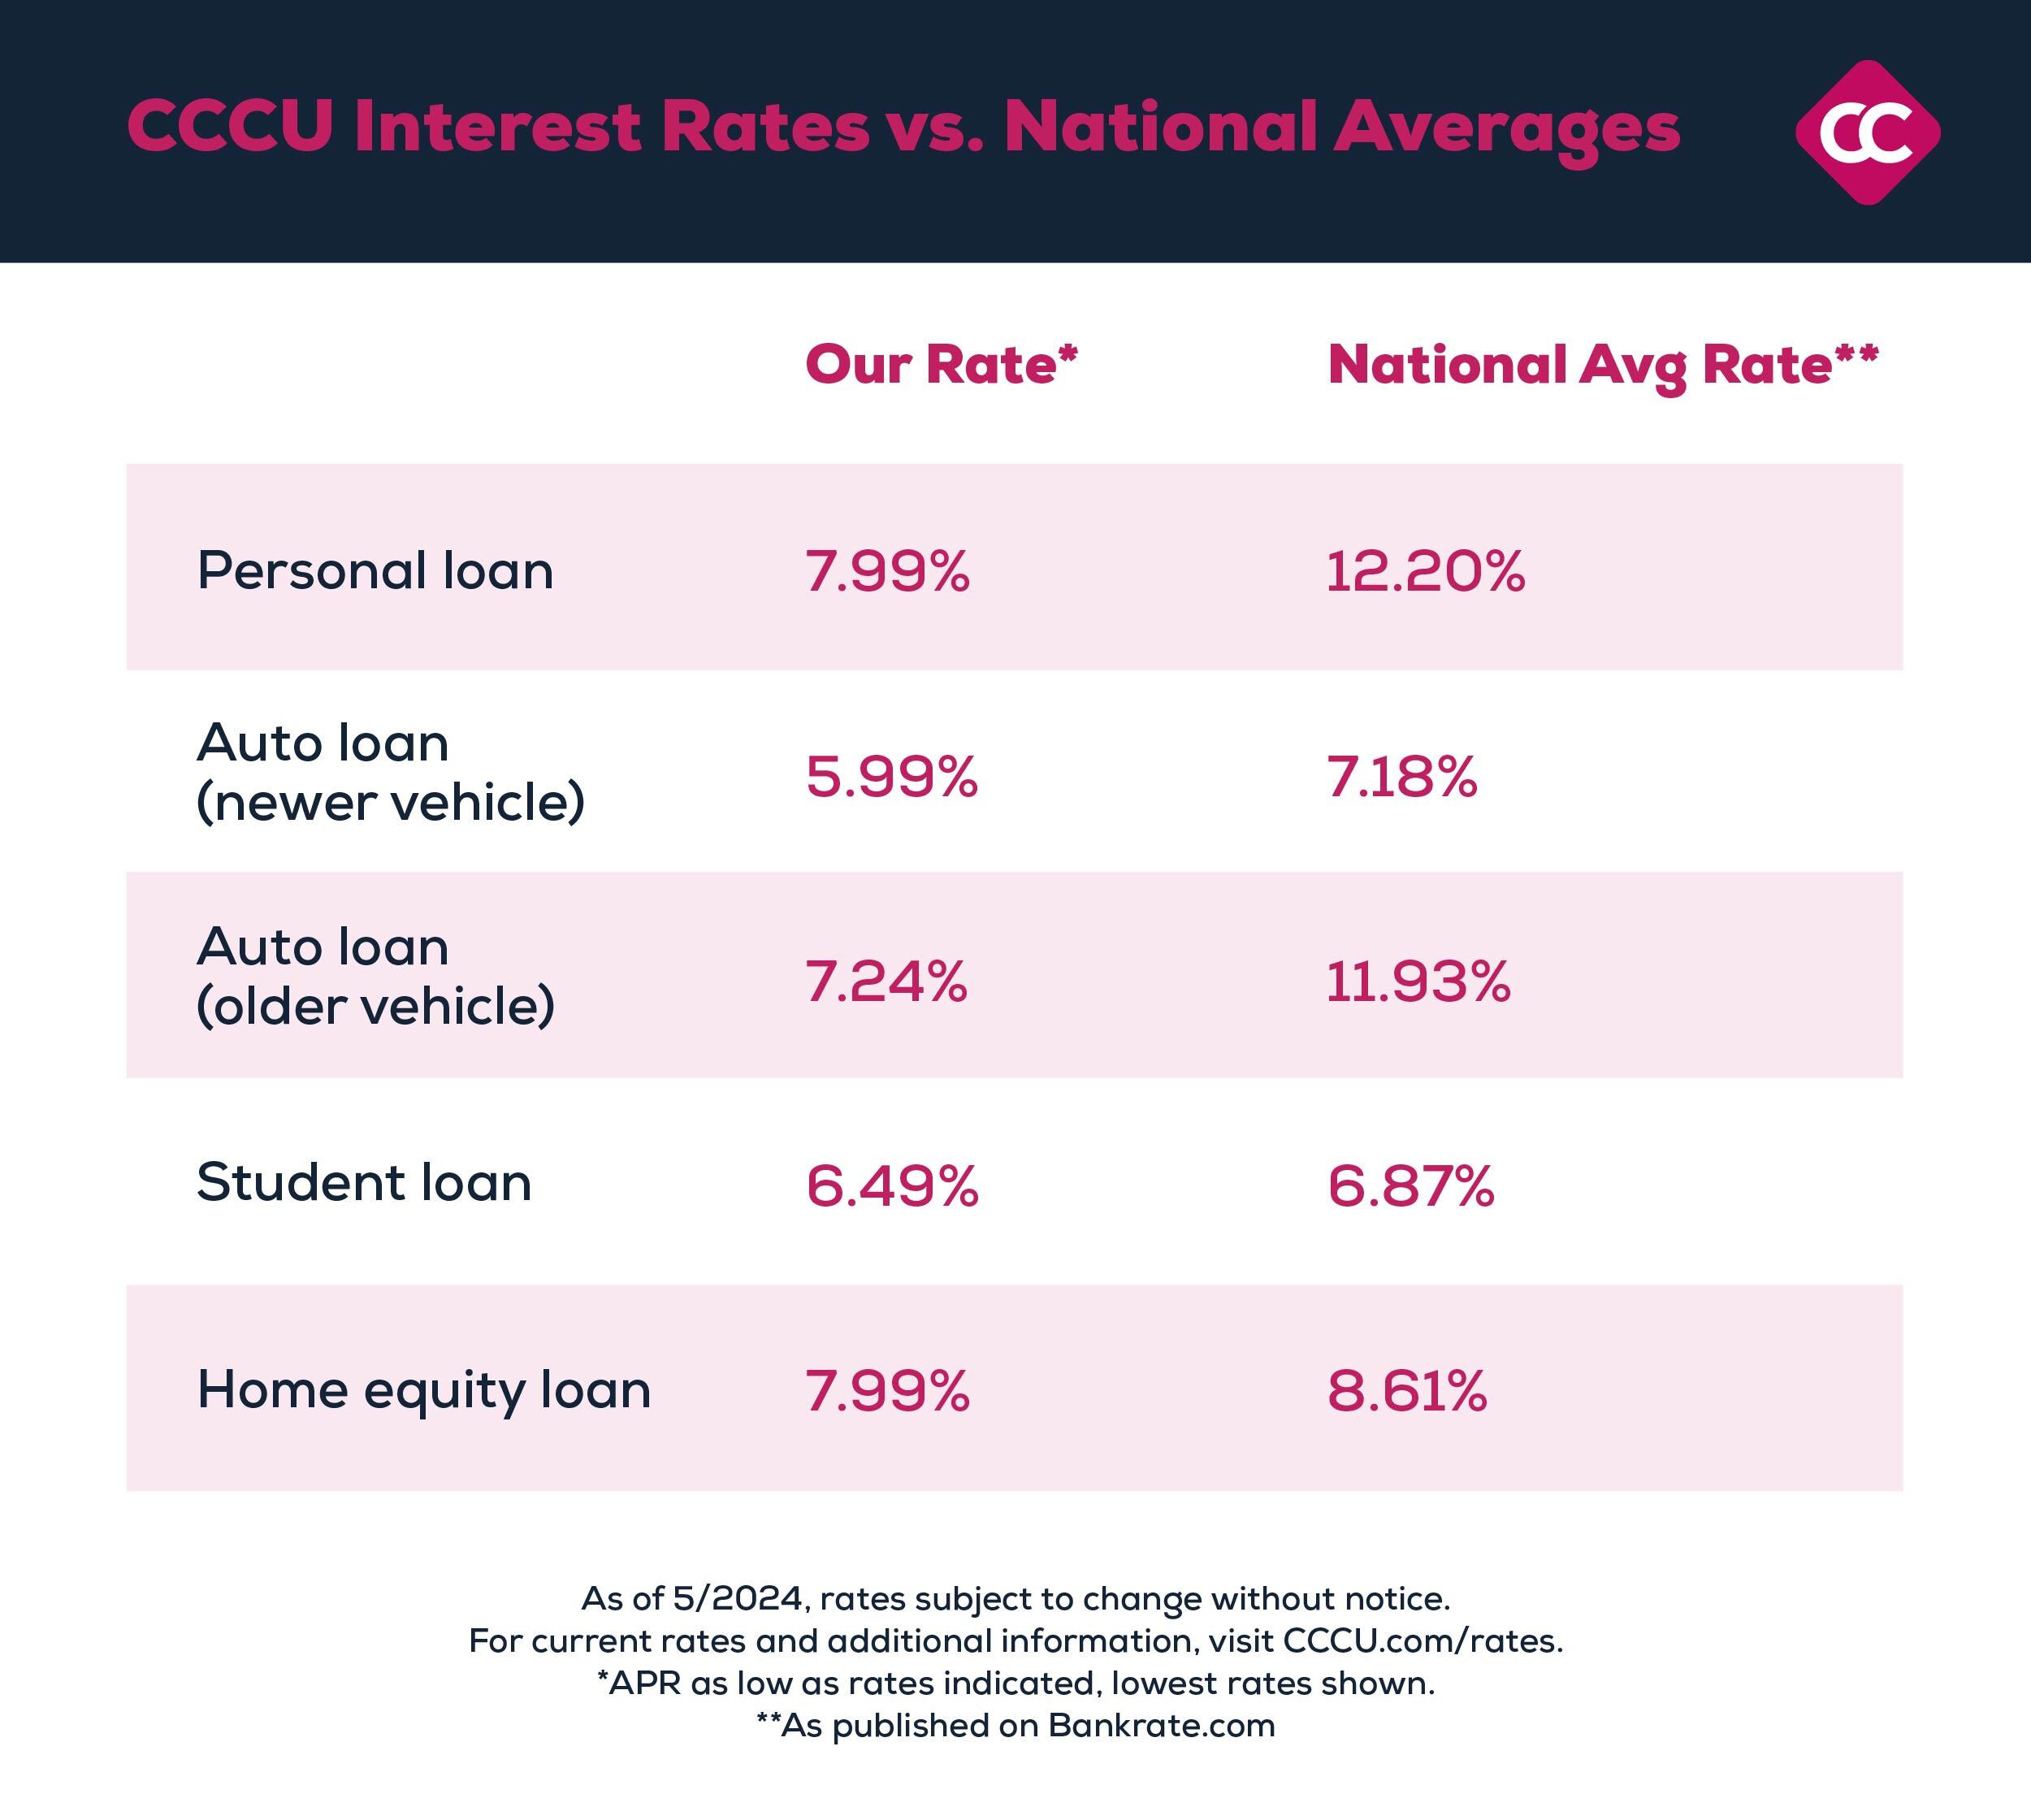 CCCU interest rates vs national averages comparison chart